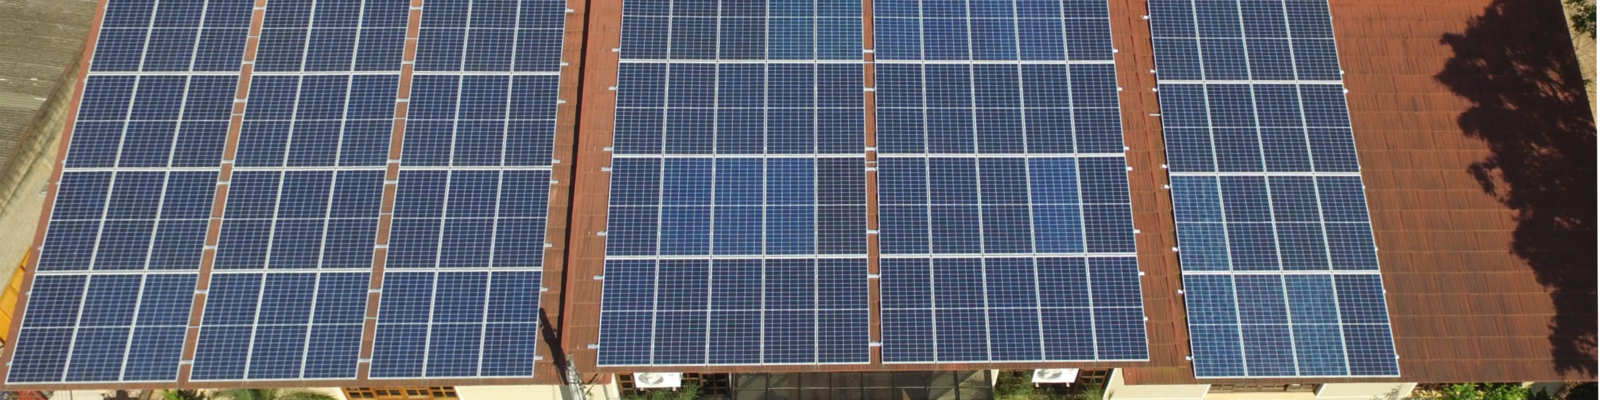 Energia solar comercial em Gravataí - Elysia sistema fotovoltaico Rio Grande do Sul